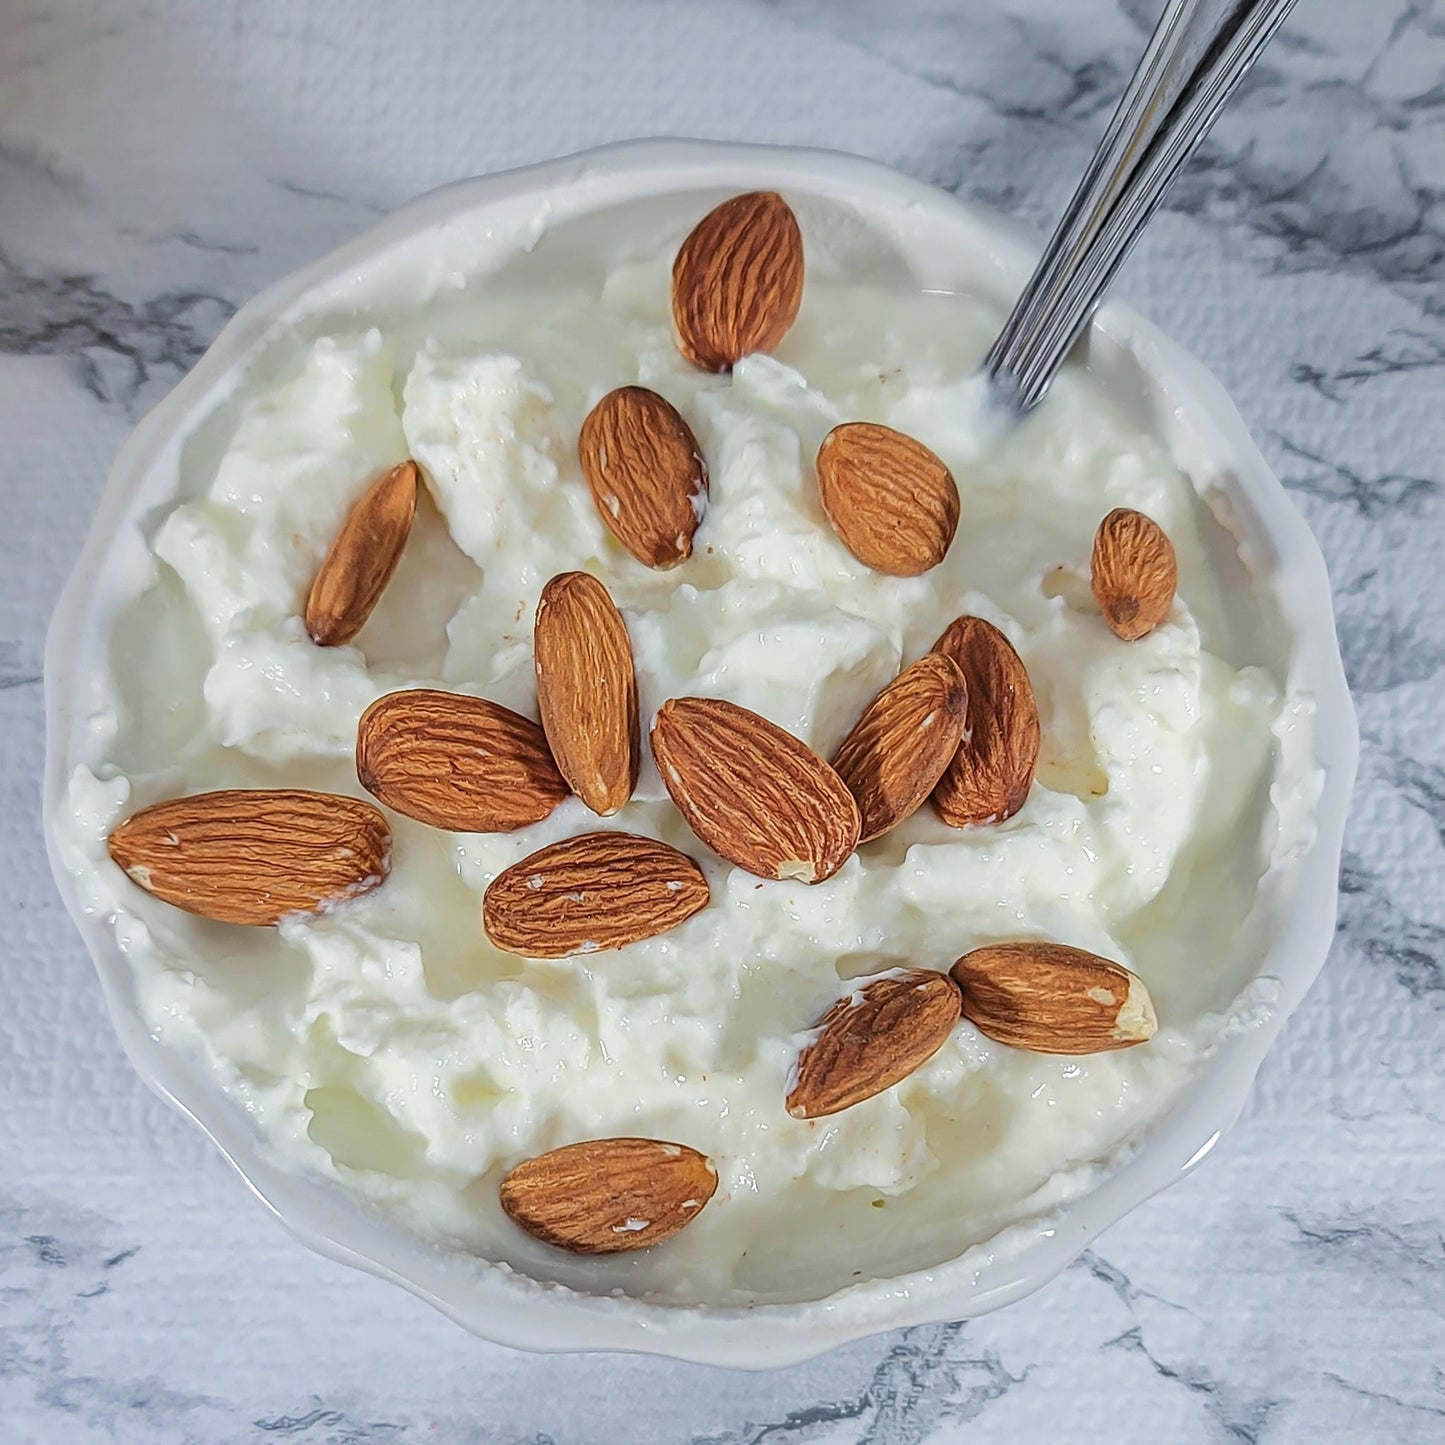 Organic Almonds and yogurt mix